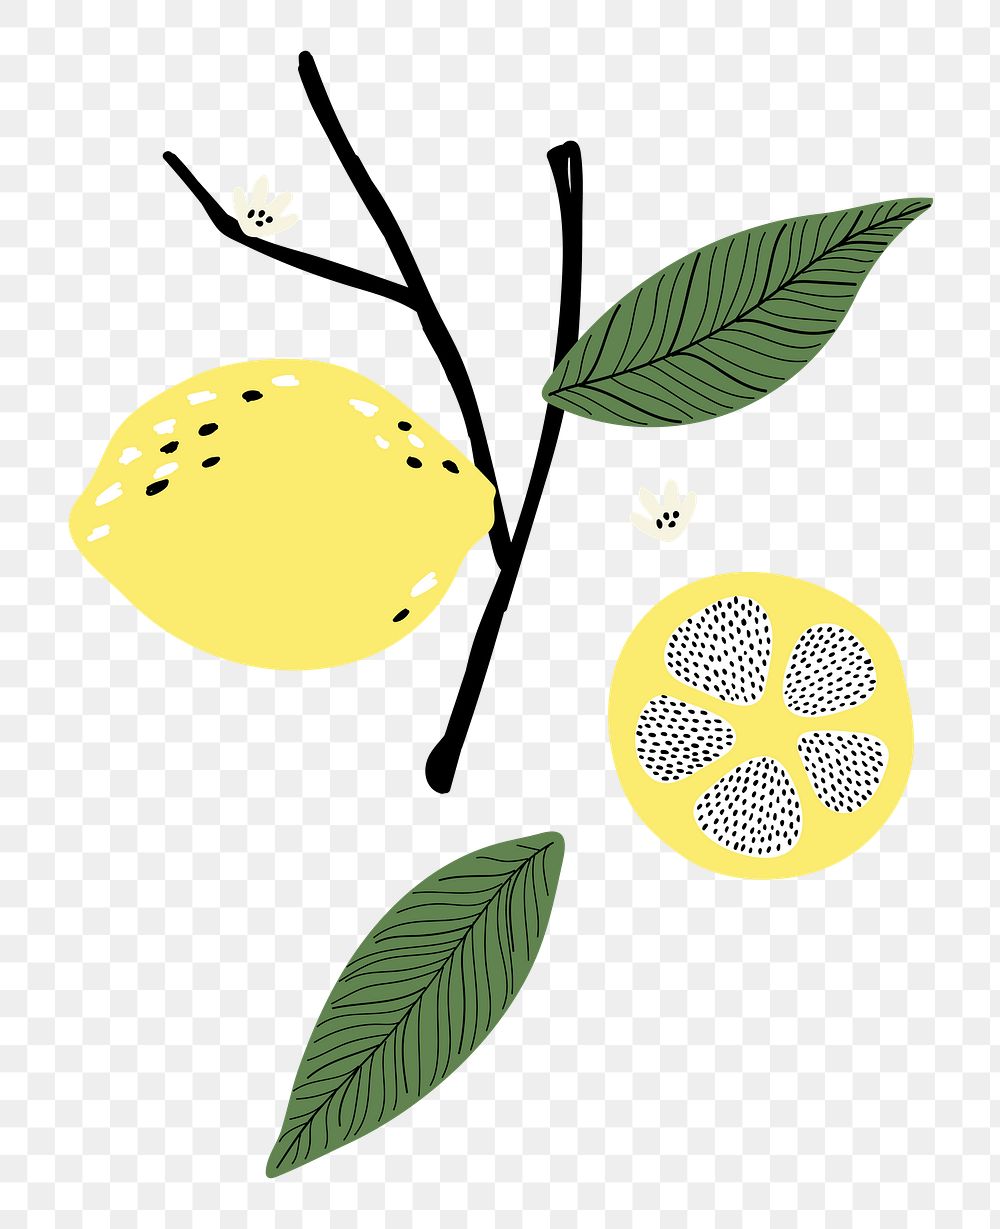 Lemon branch png sticker, fruit doodle, transparent background